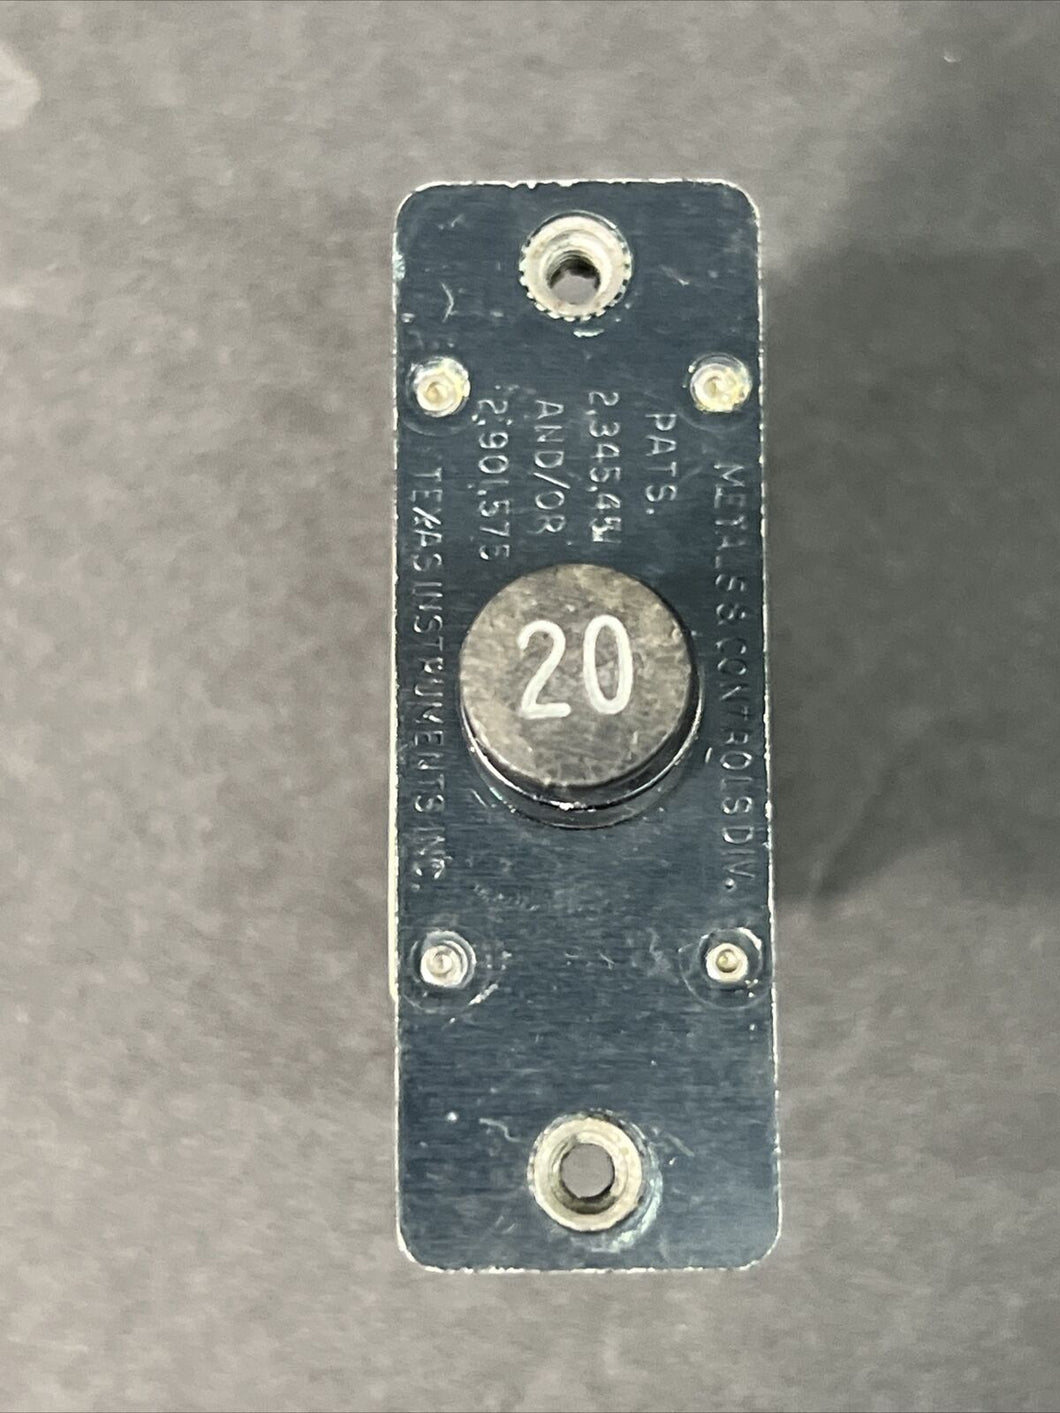 Circuit breaker D7271-3-20 Klixon